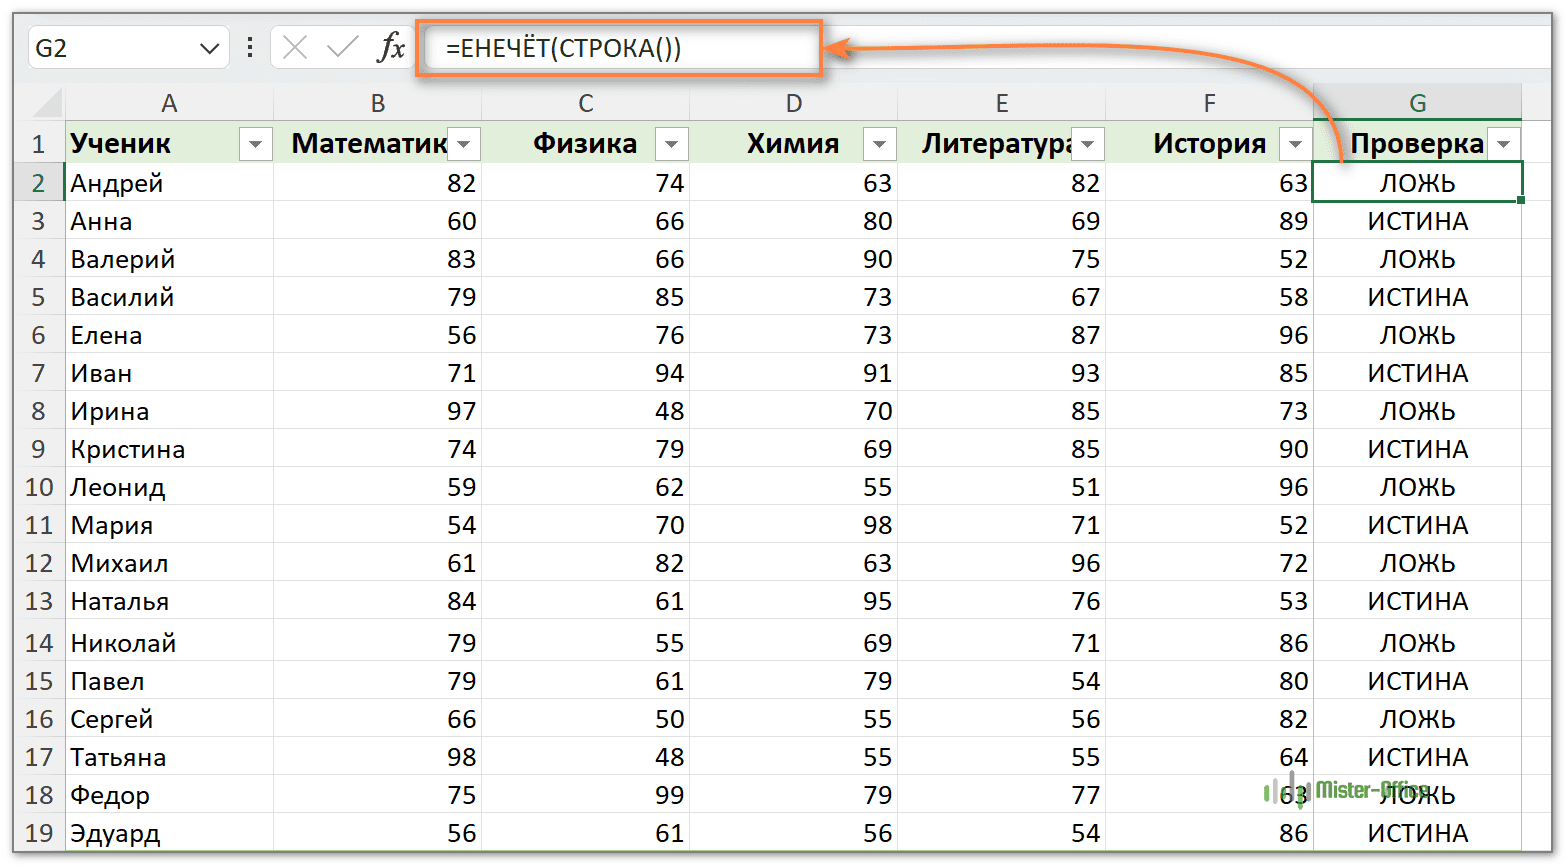 Выбор каждой второй строки Excel с помощью формулы и фильтра